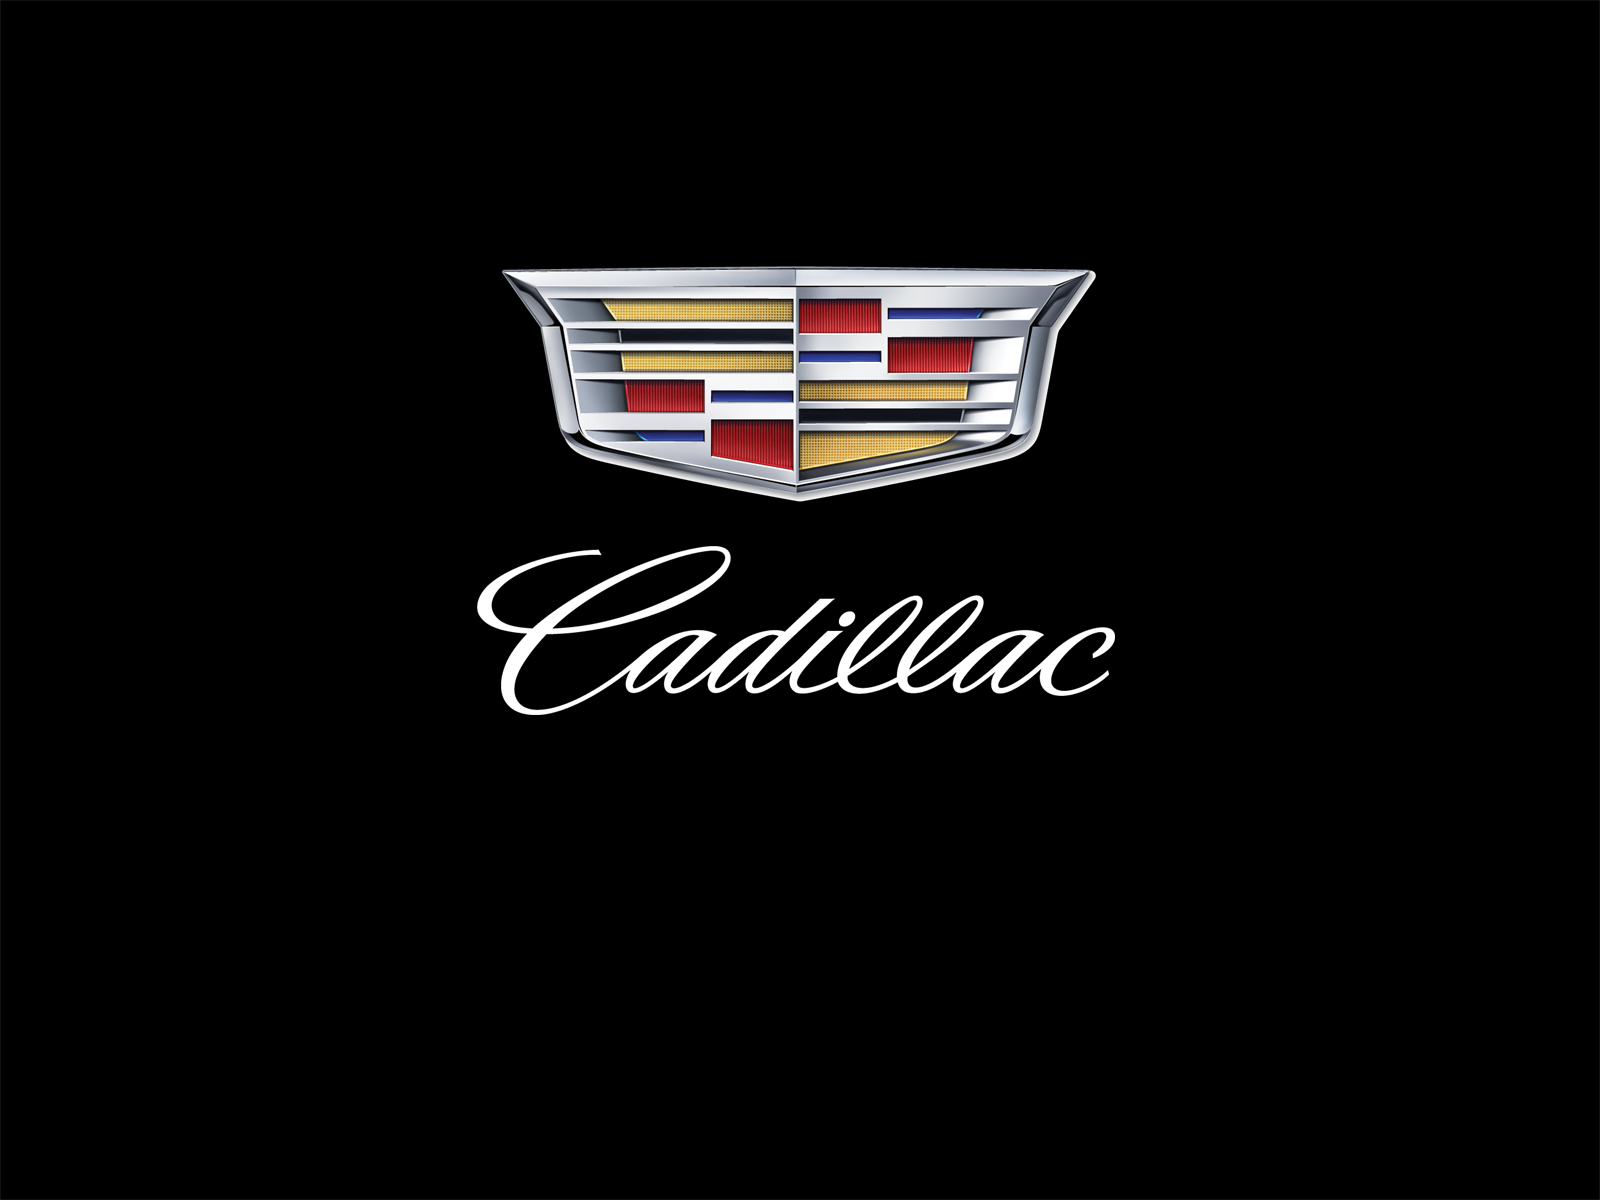 Кадиллак логотип. Кадиллак Эскалейд лого. Кадиллак значок машины. Кадиллак Эскалейд значок. Надпись Кадиллак.